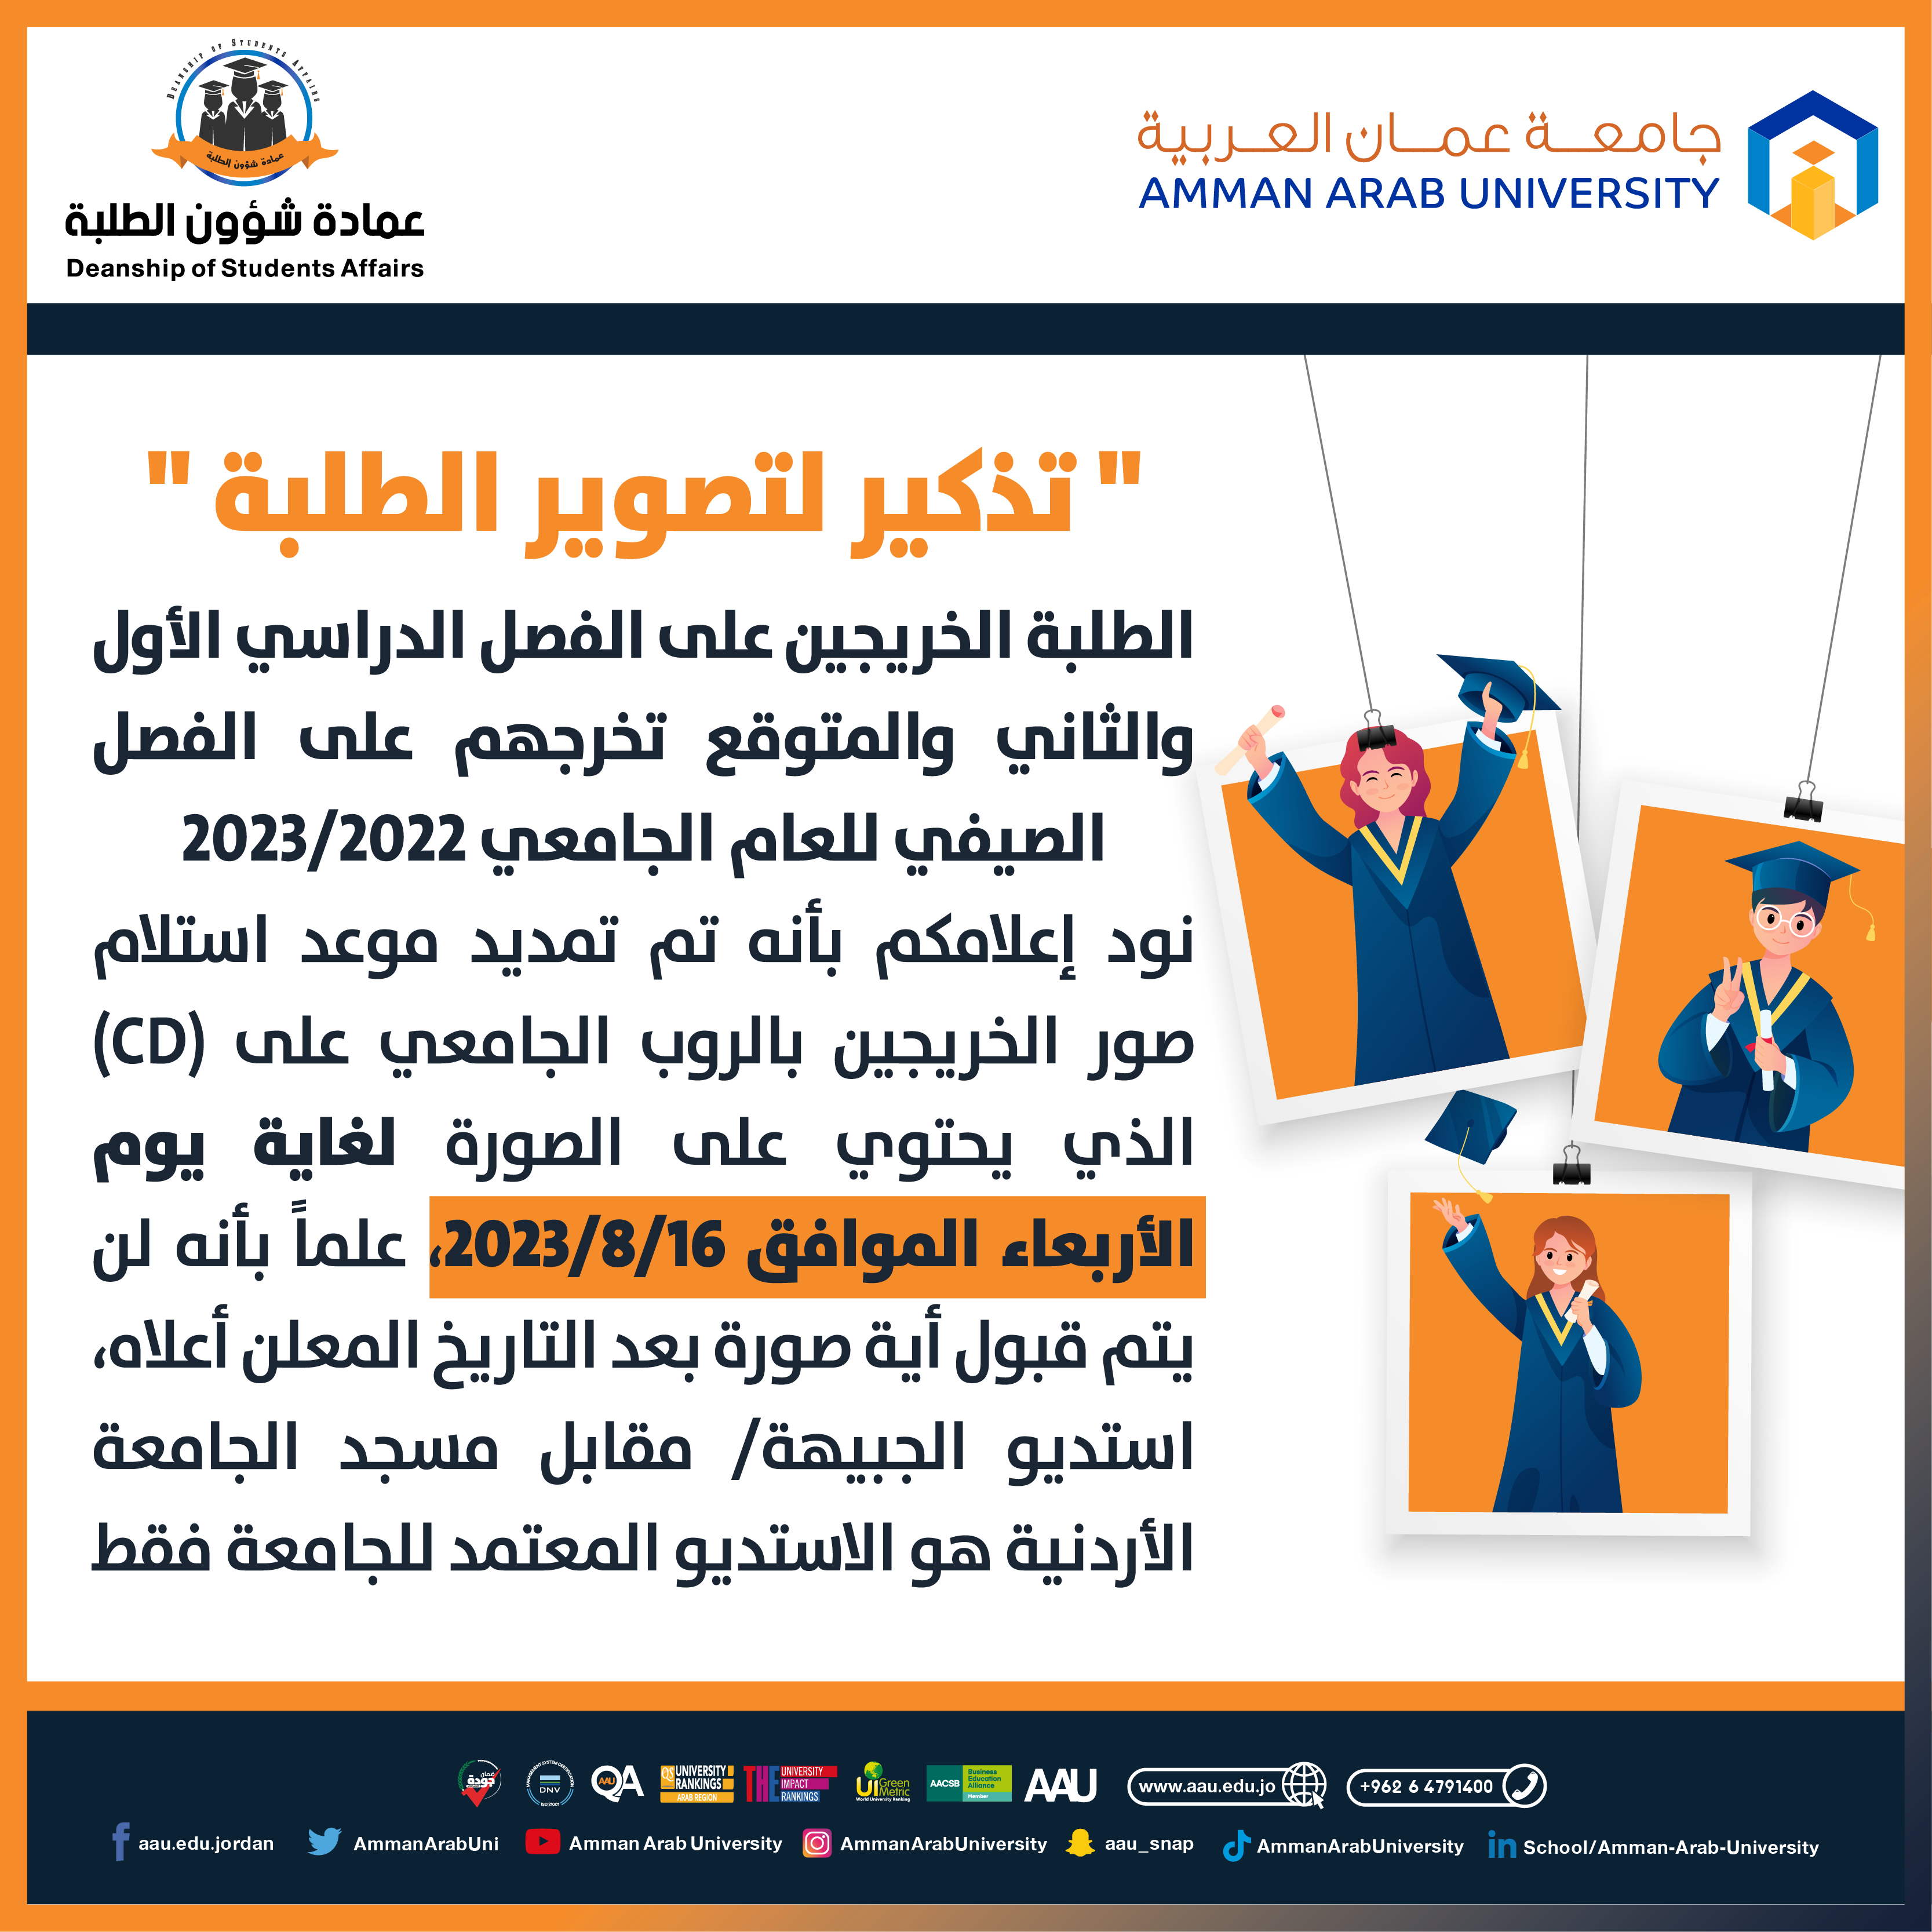 اعلان هام بخصوص تمديم موعد استلام صور الخريجين بالروب الجامعي